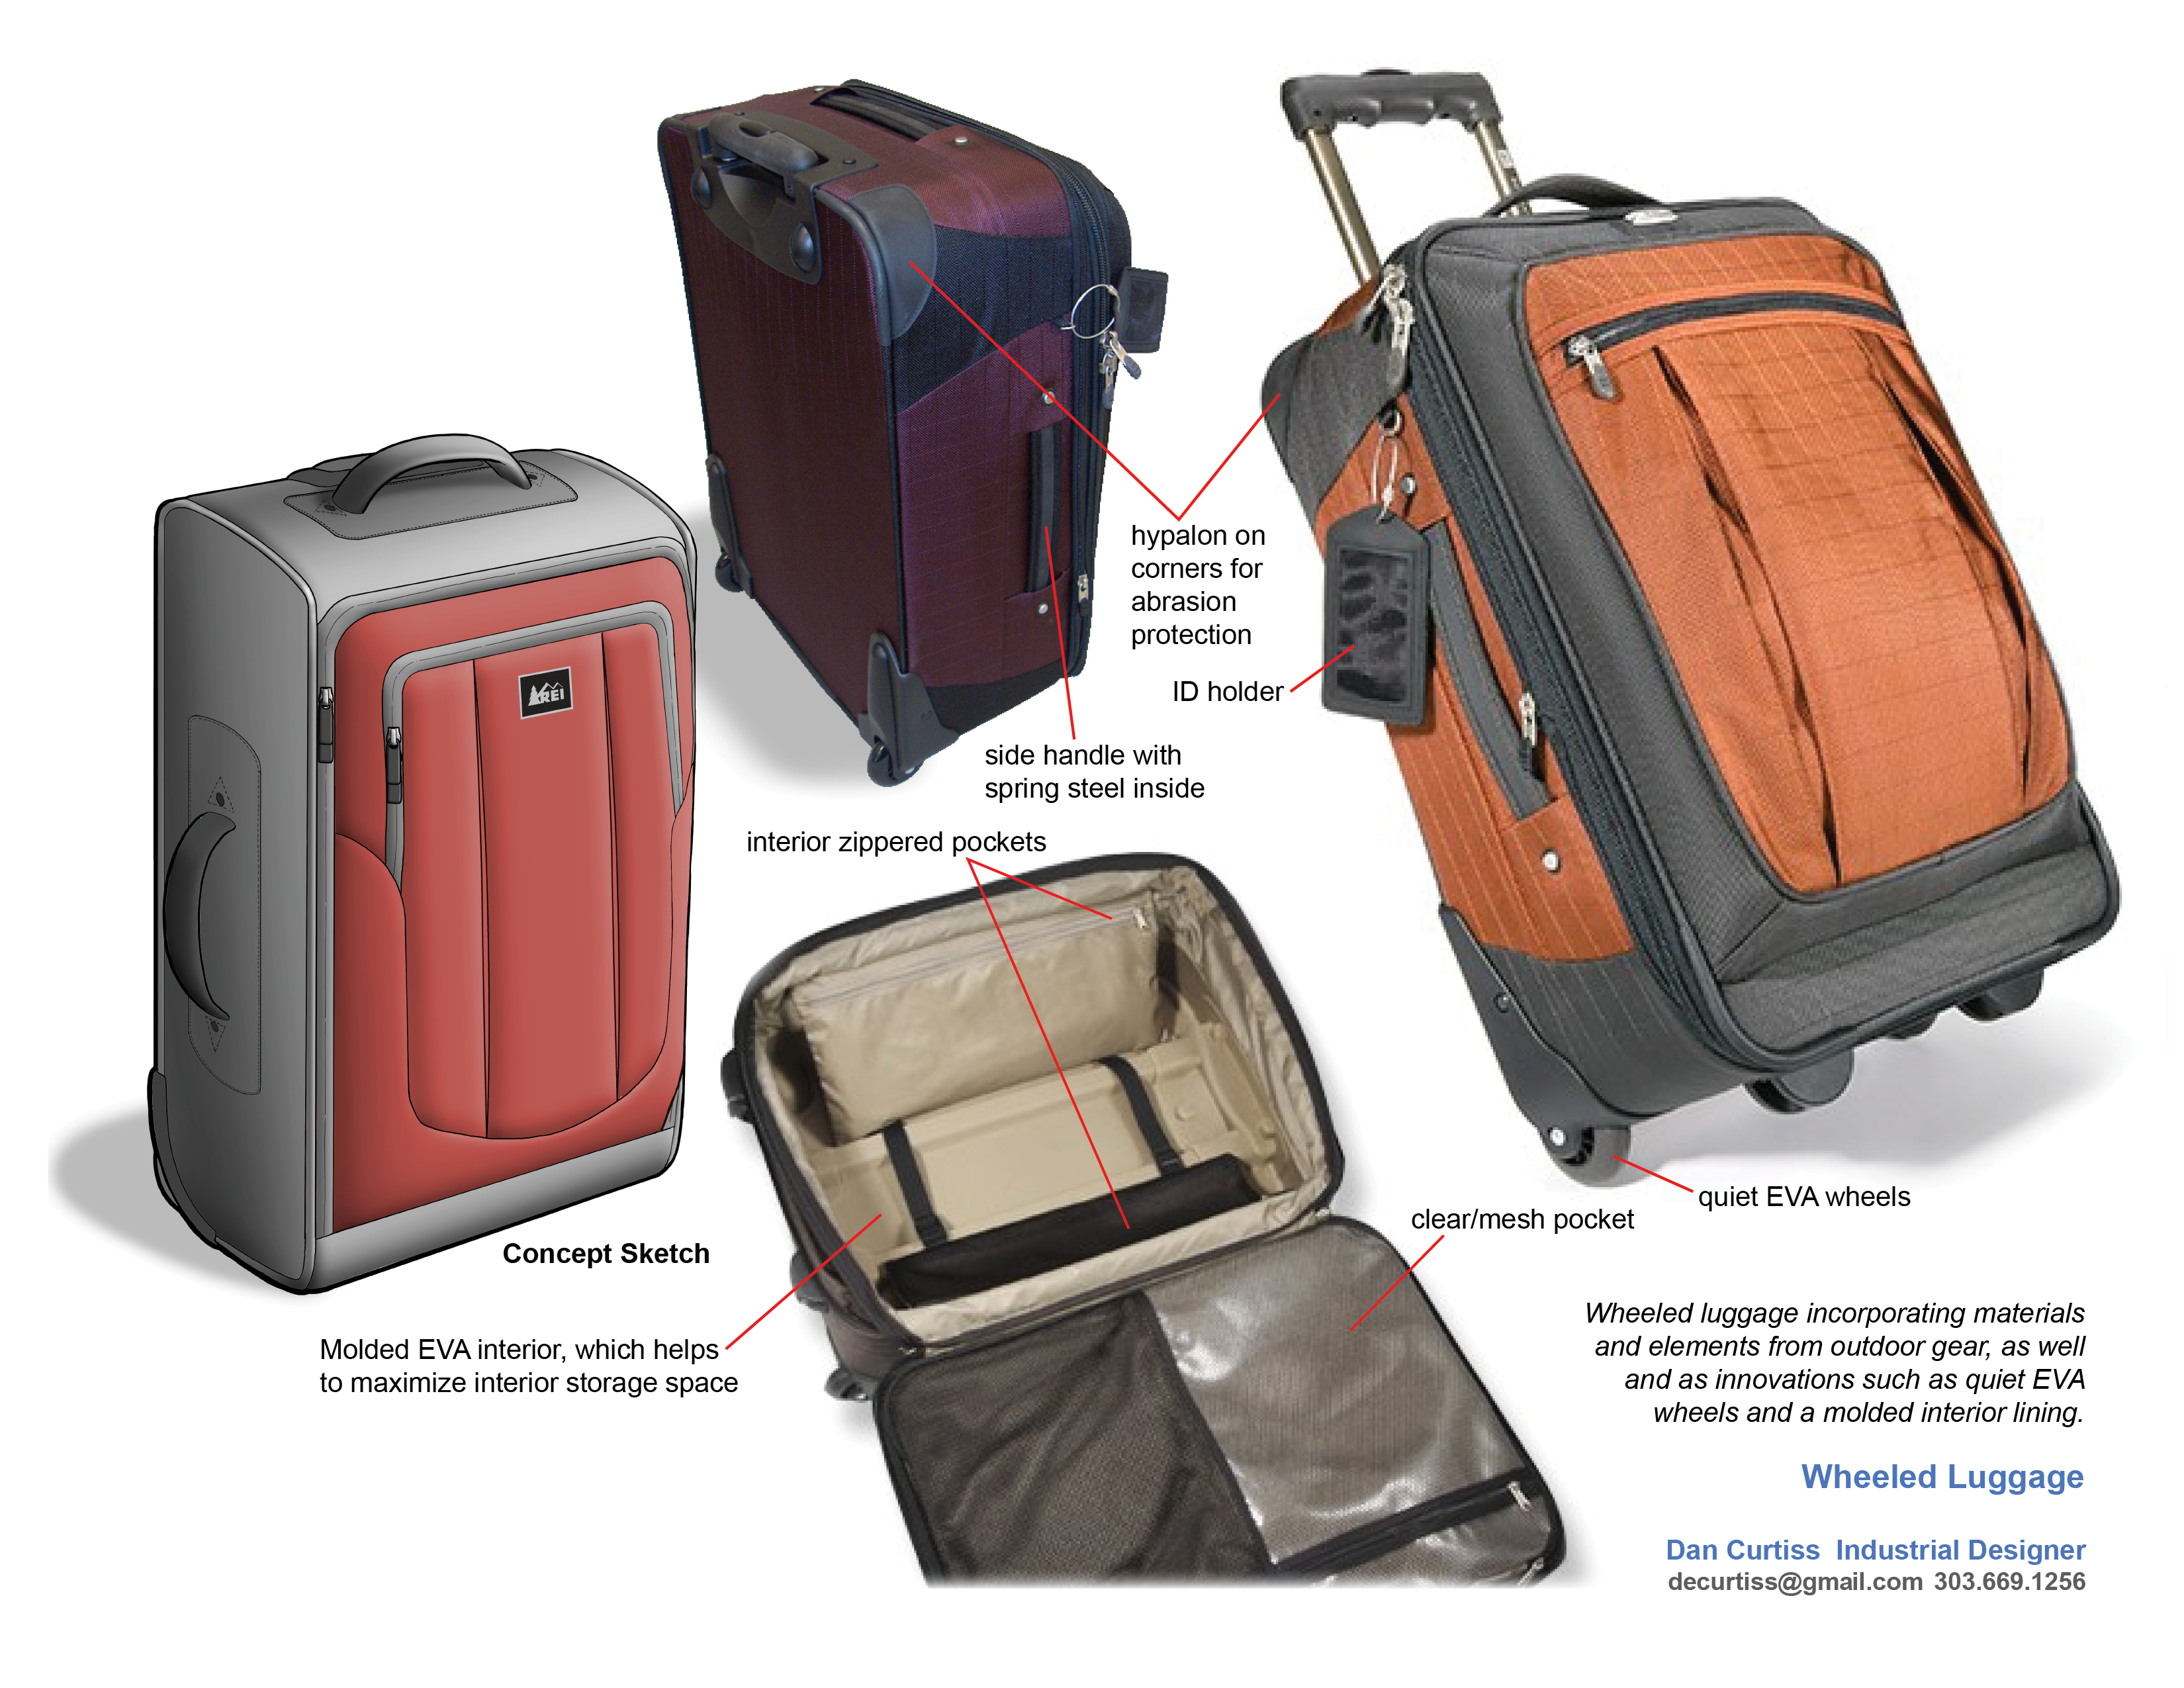 Ballistic wheeled luggage design